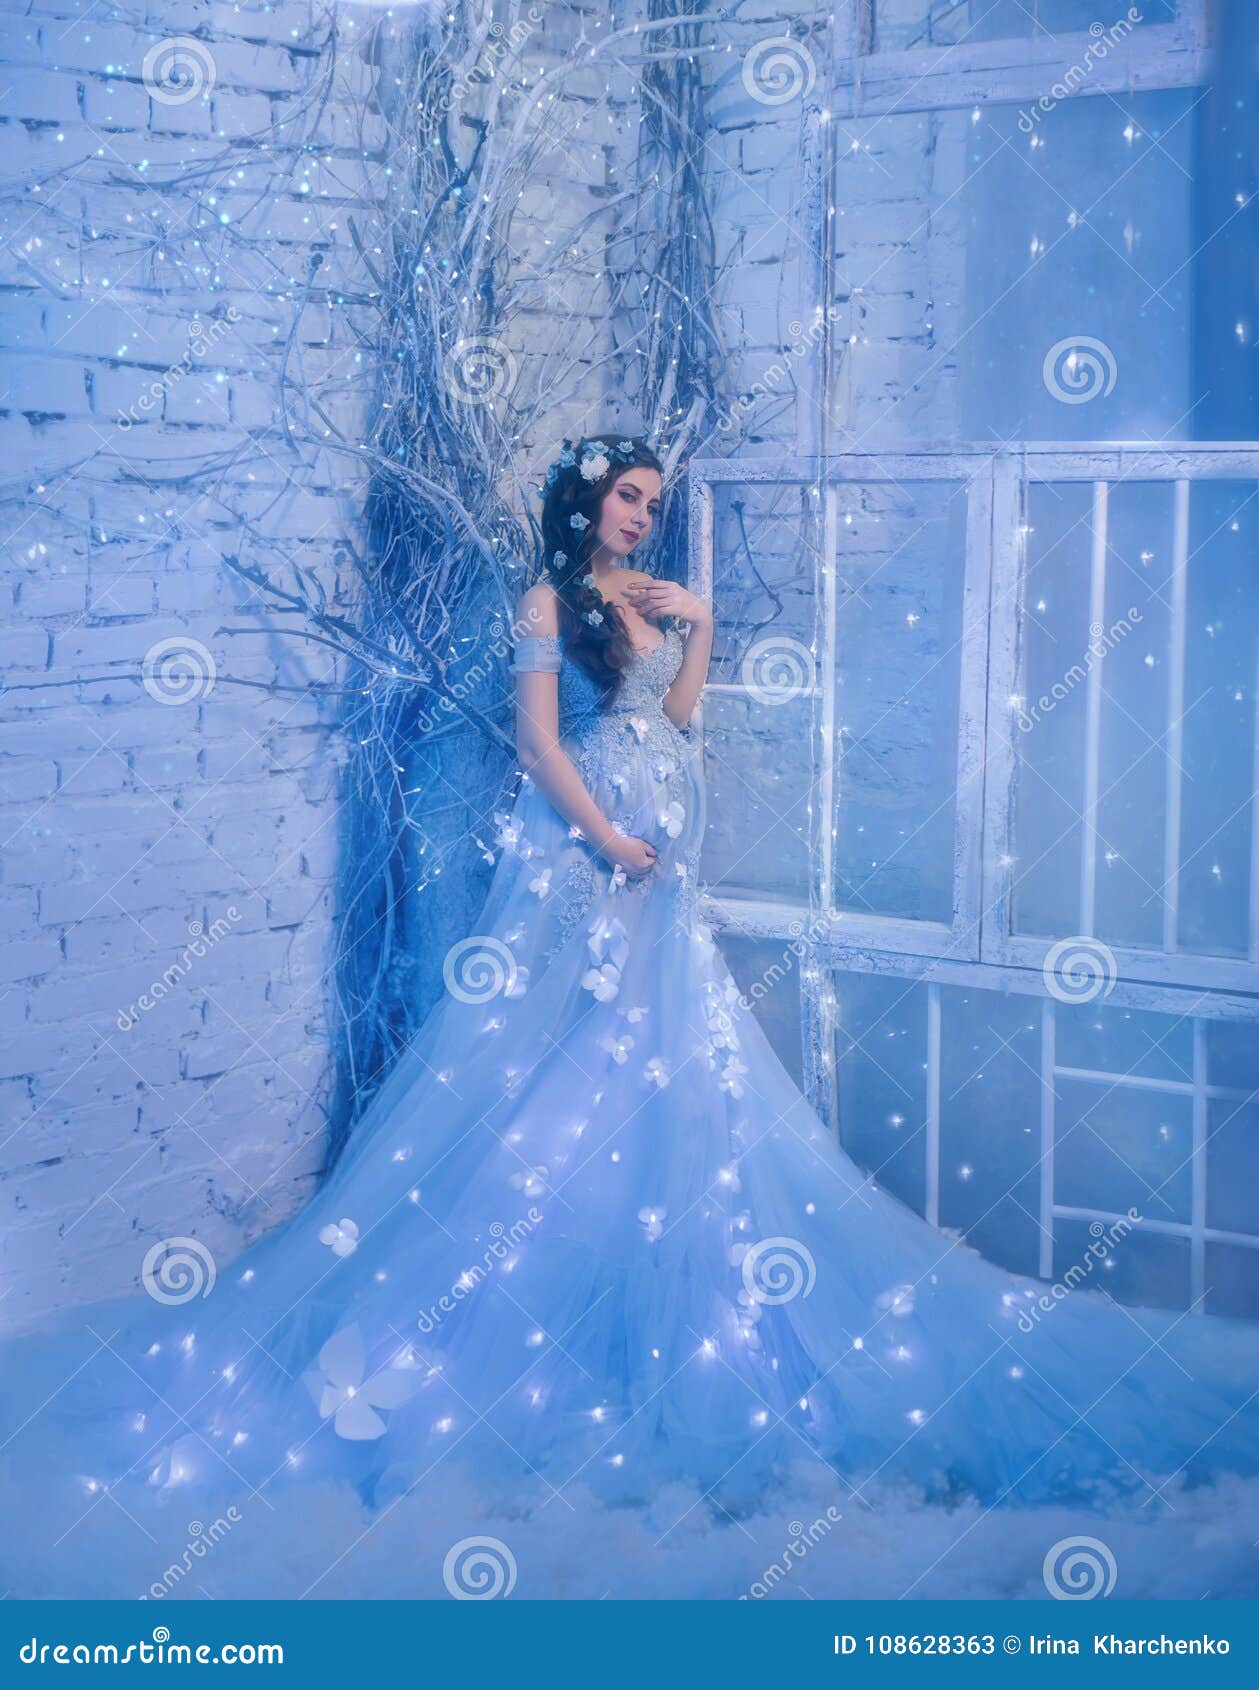 hermosa chica、Parece una princesa con un vestido azul oscuro en una cueva  de cristal azul oscuro con luces de neón de color azul. - SeaArt AI